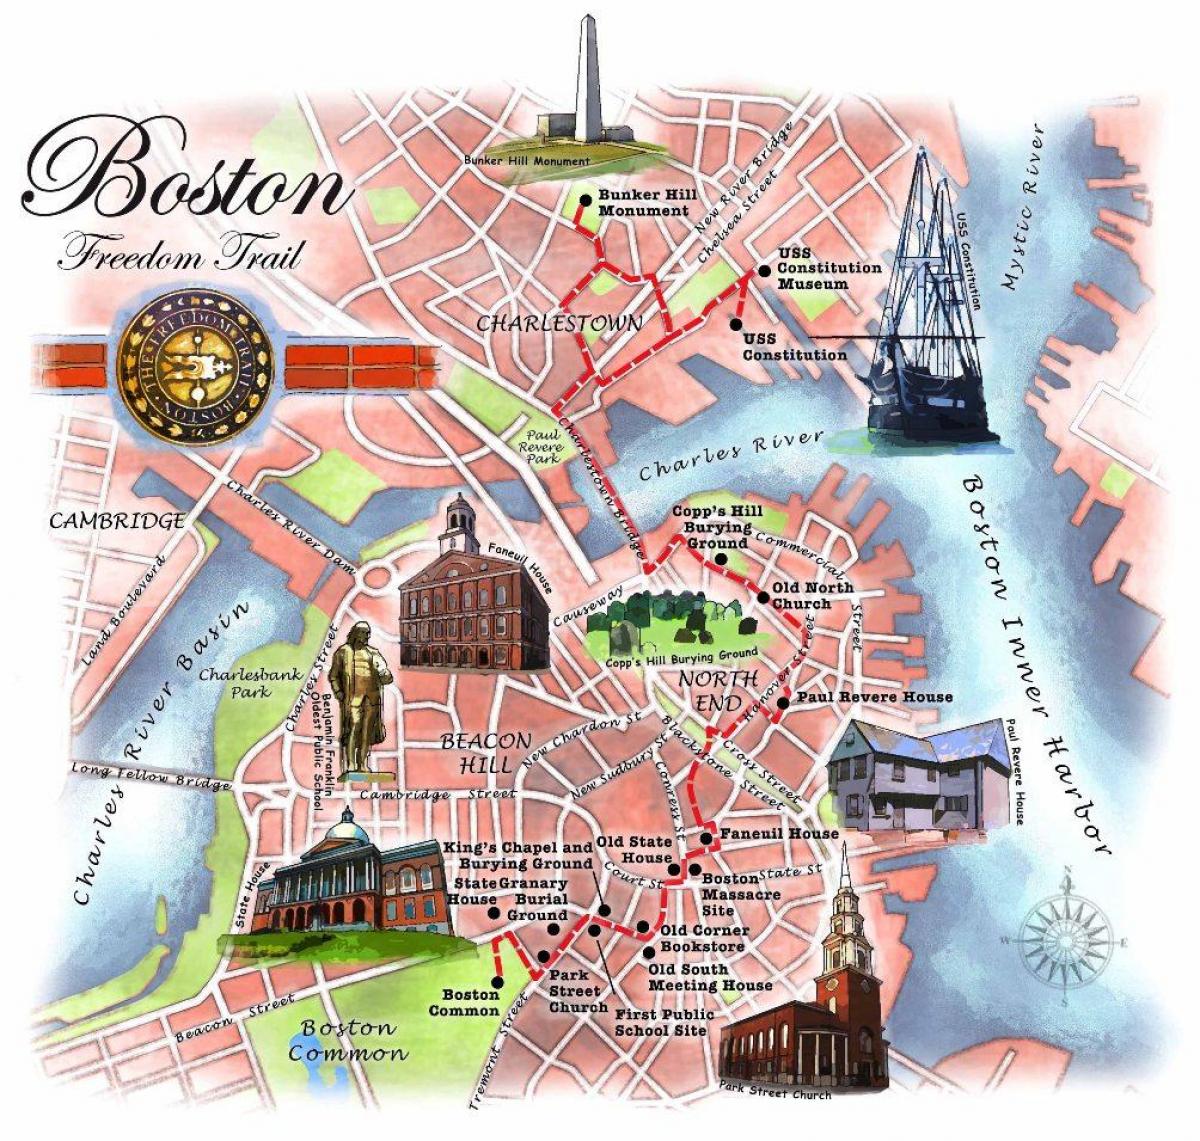 프리덤 트레일 보스턴 지도